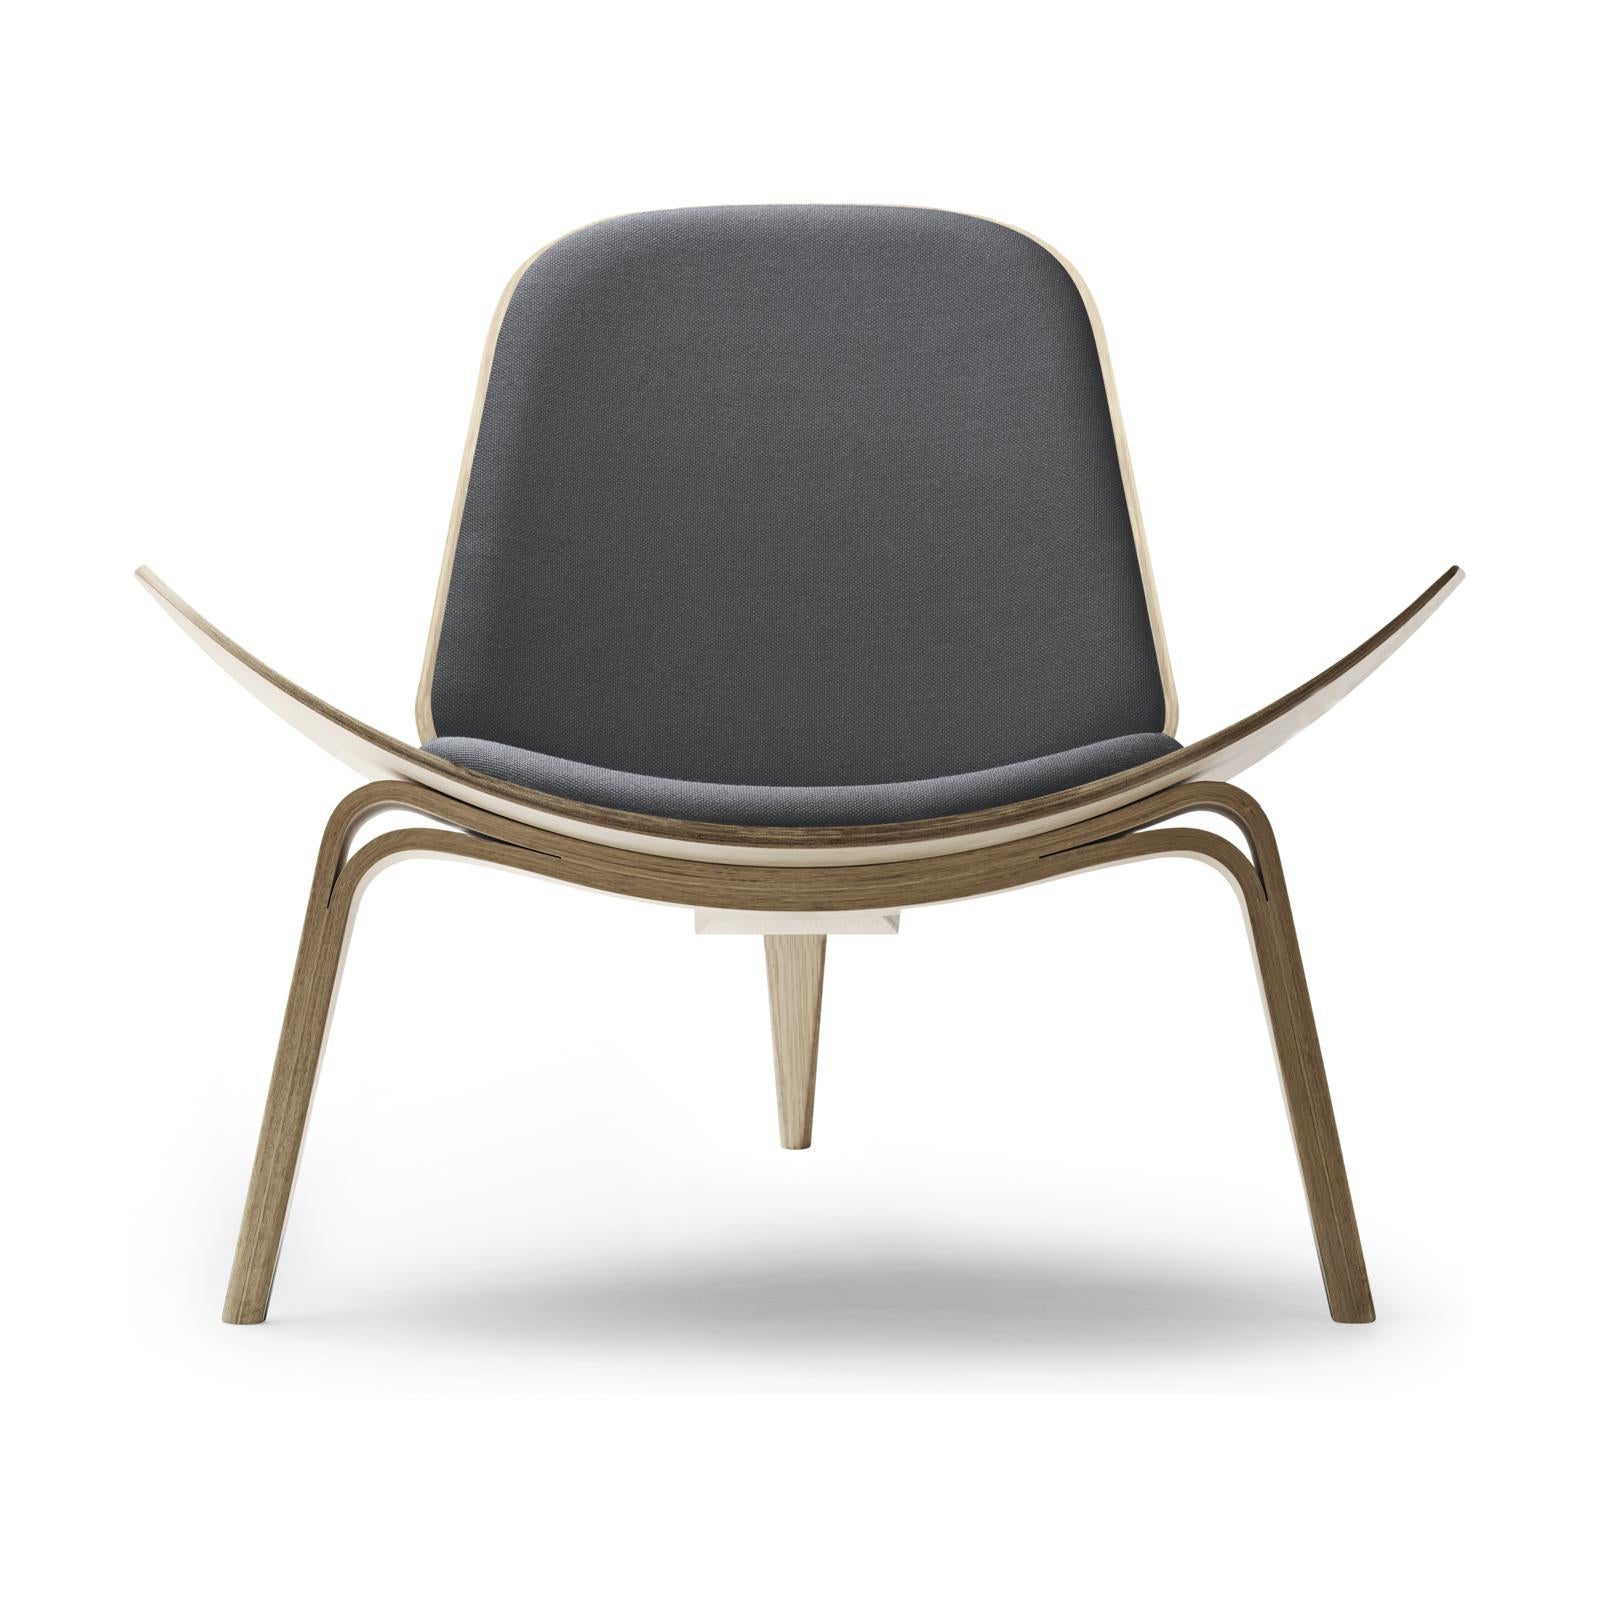 Carl Hansen CH07 Shell -stoel, wit geoliede eiken/donkergrijze stof